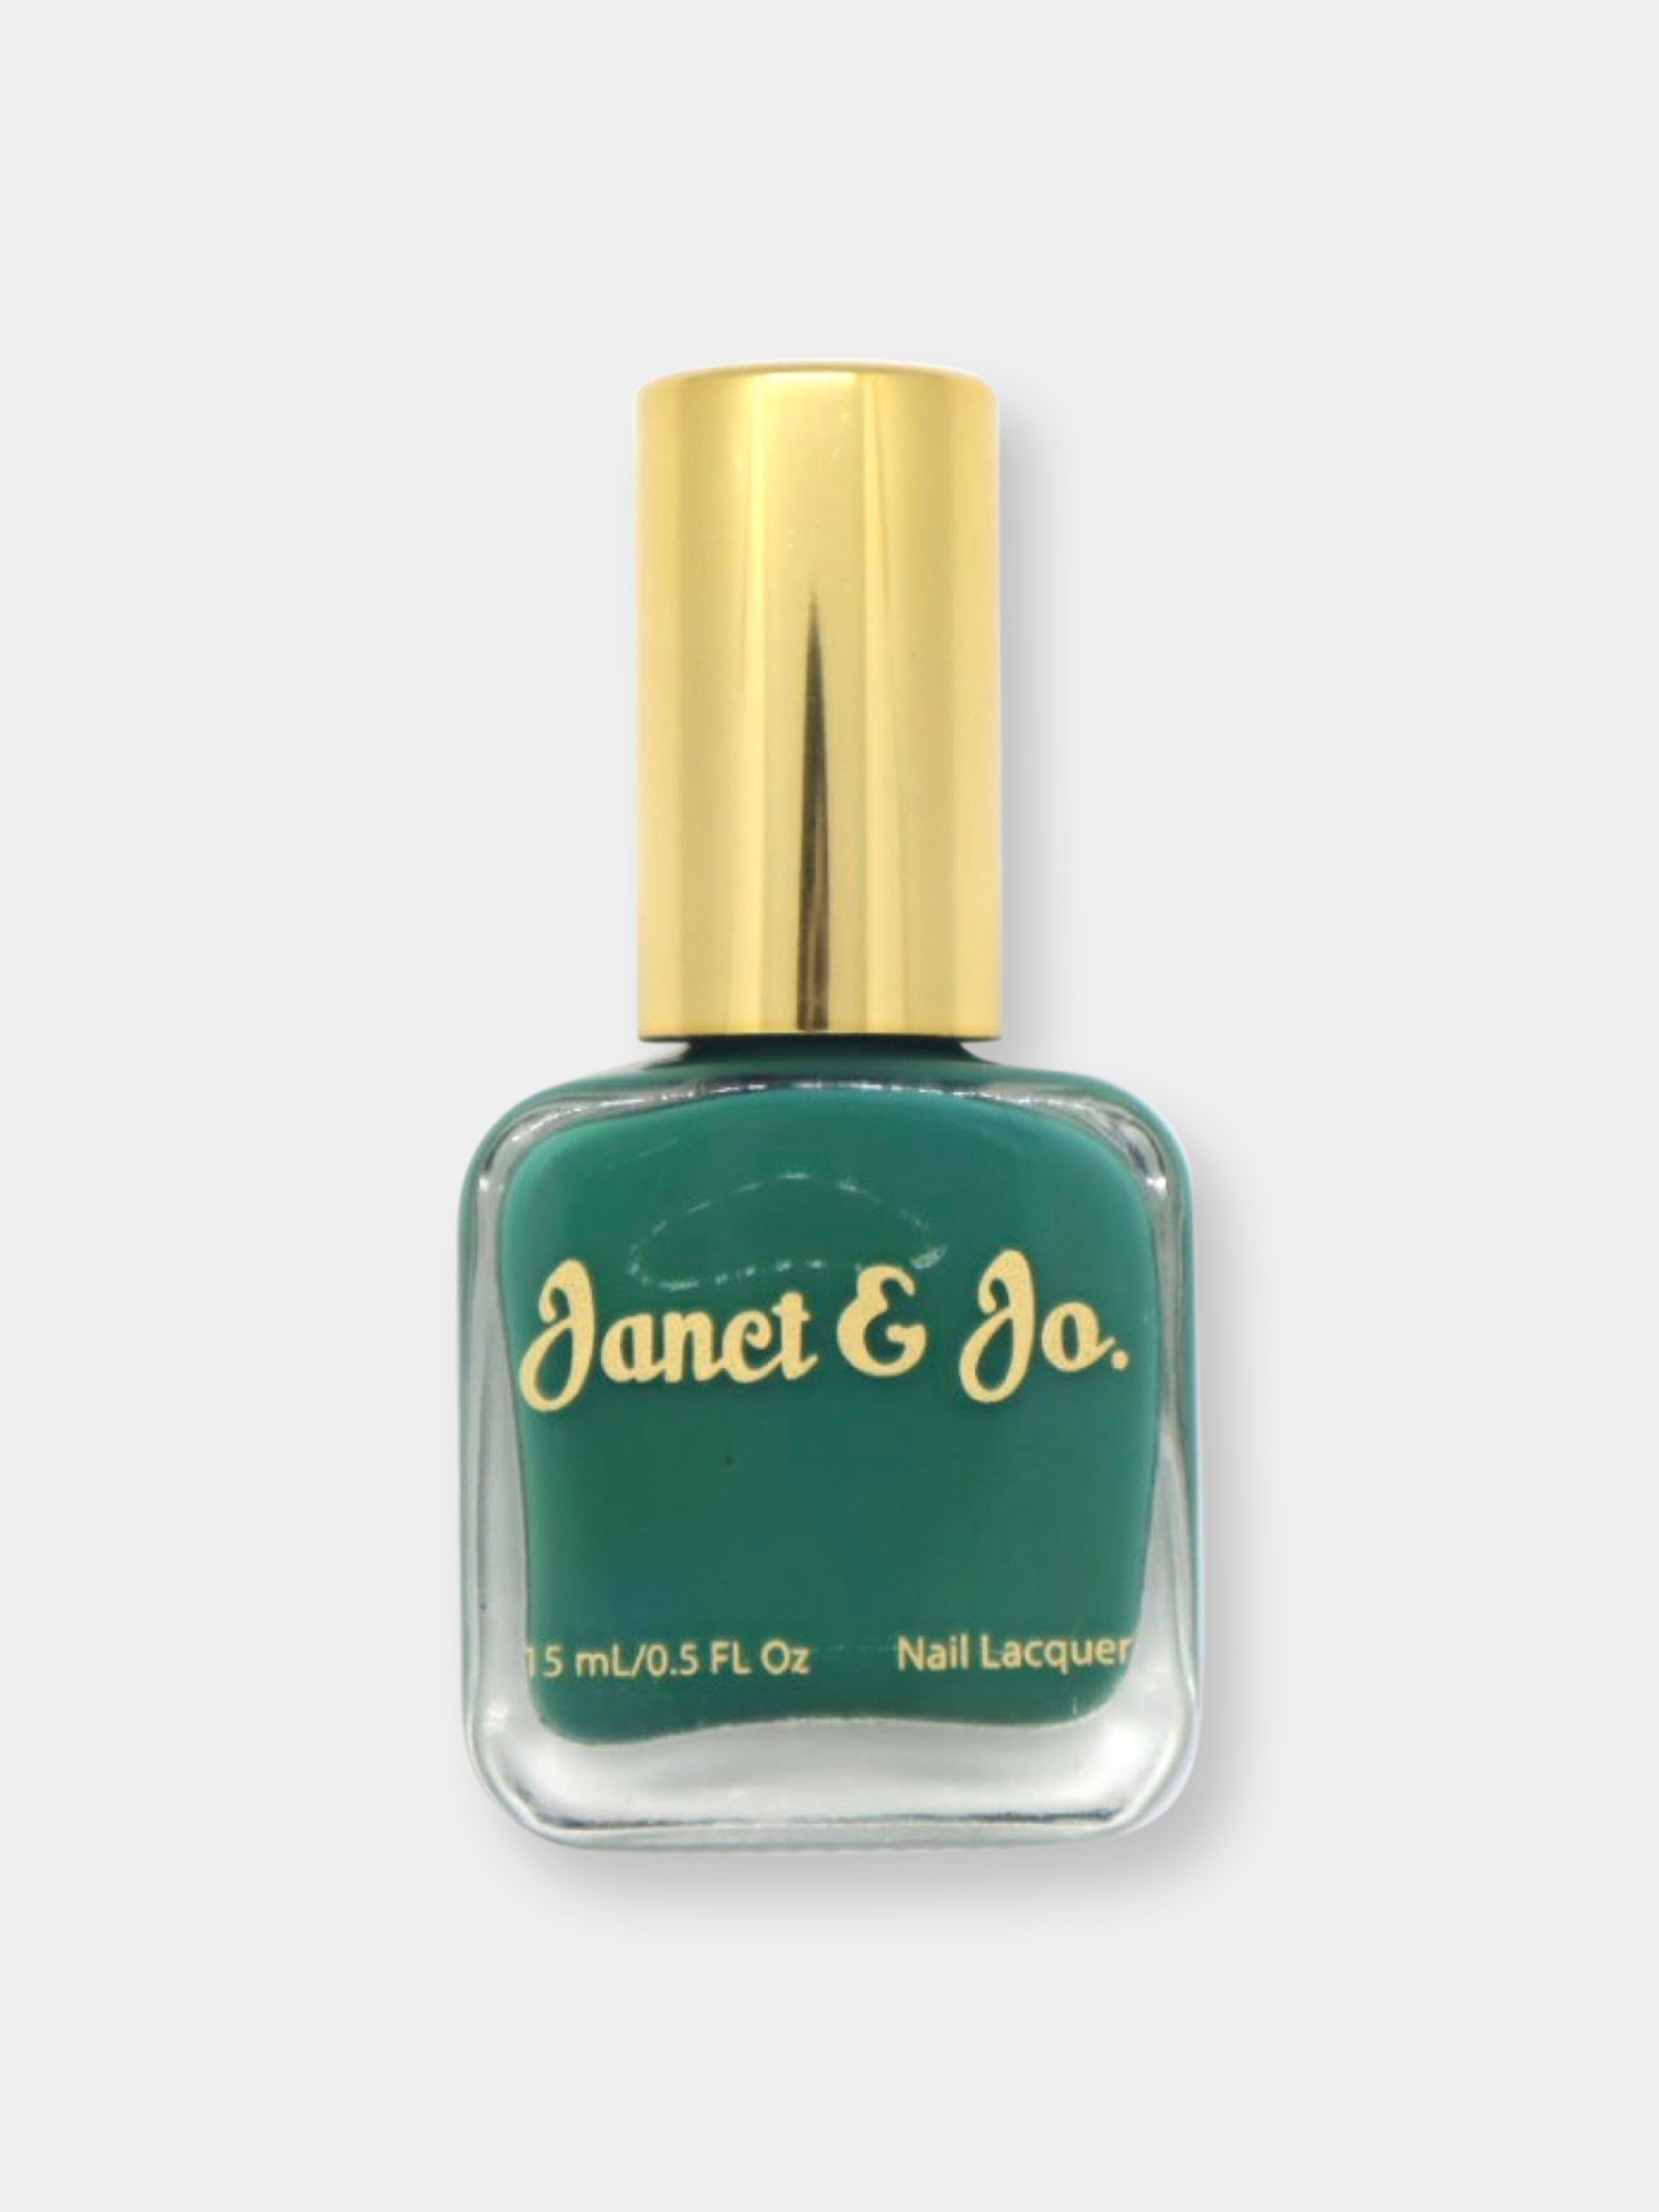 Janet & Jo. An Entire Mood In Green